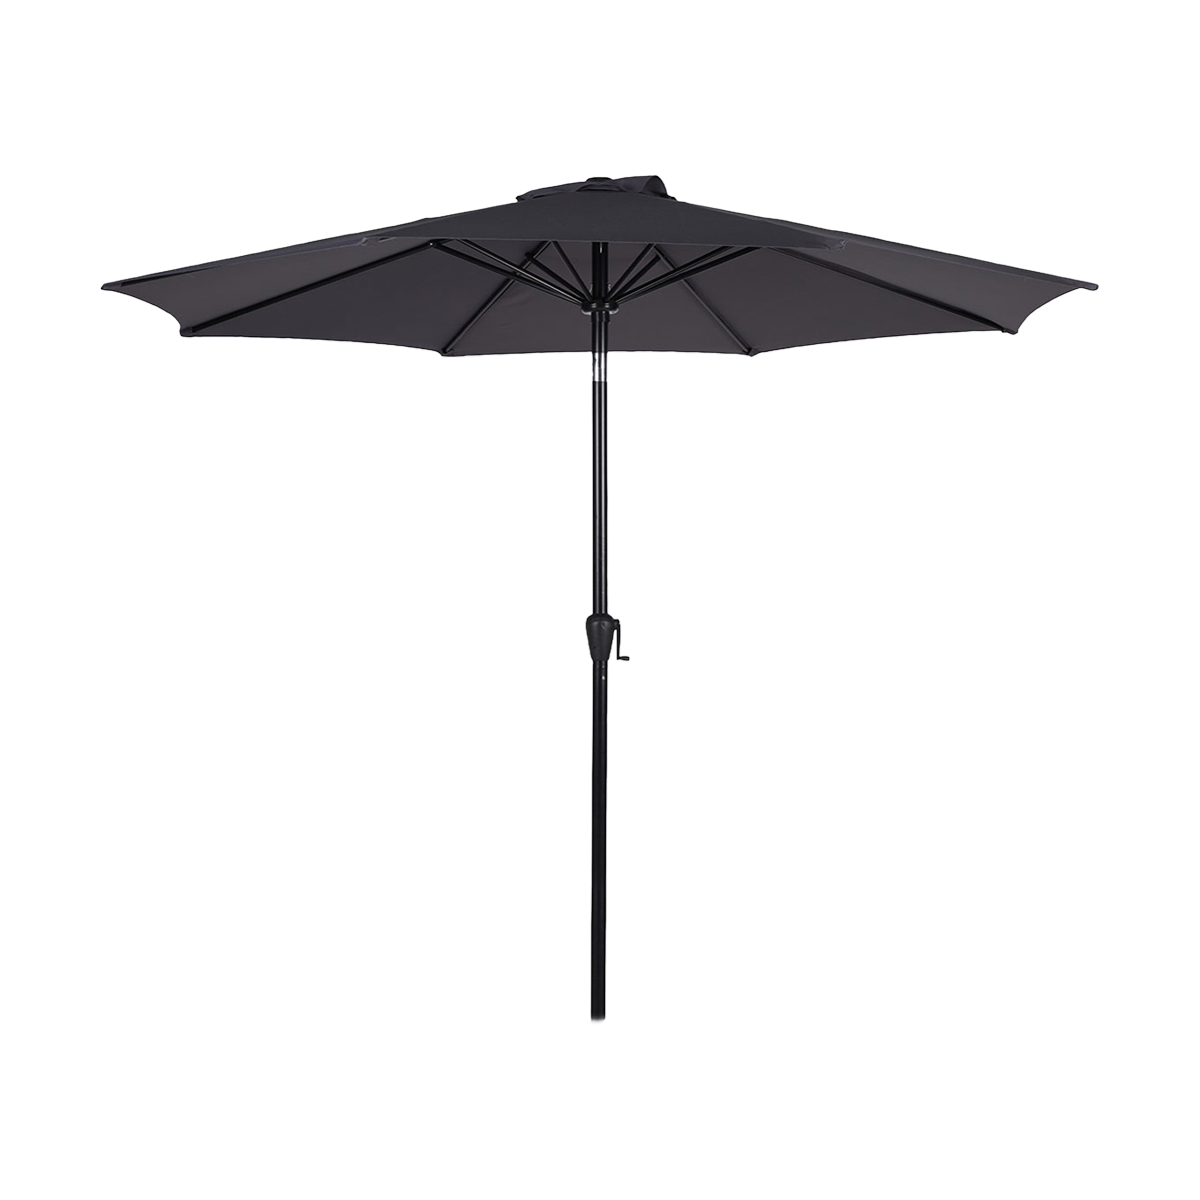 haar Contractie menu Jairo verstelbare parasol donkergrijs - Ø 3 meter | Gewoonstijl